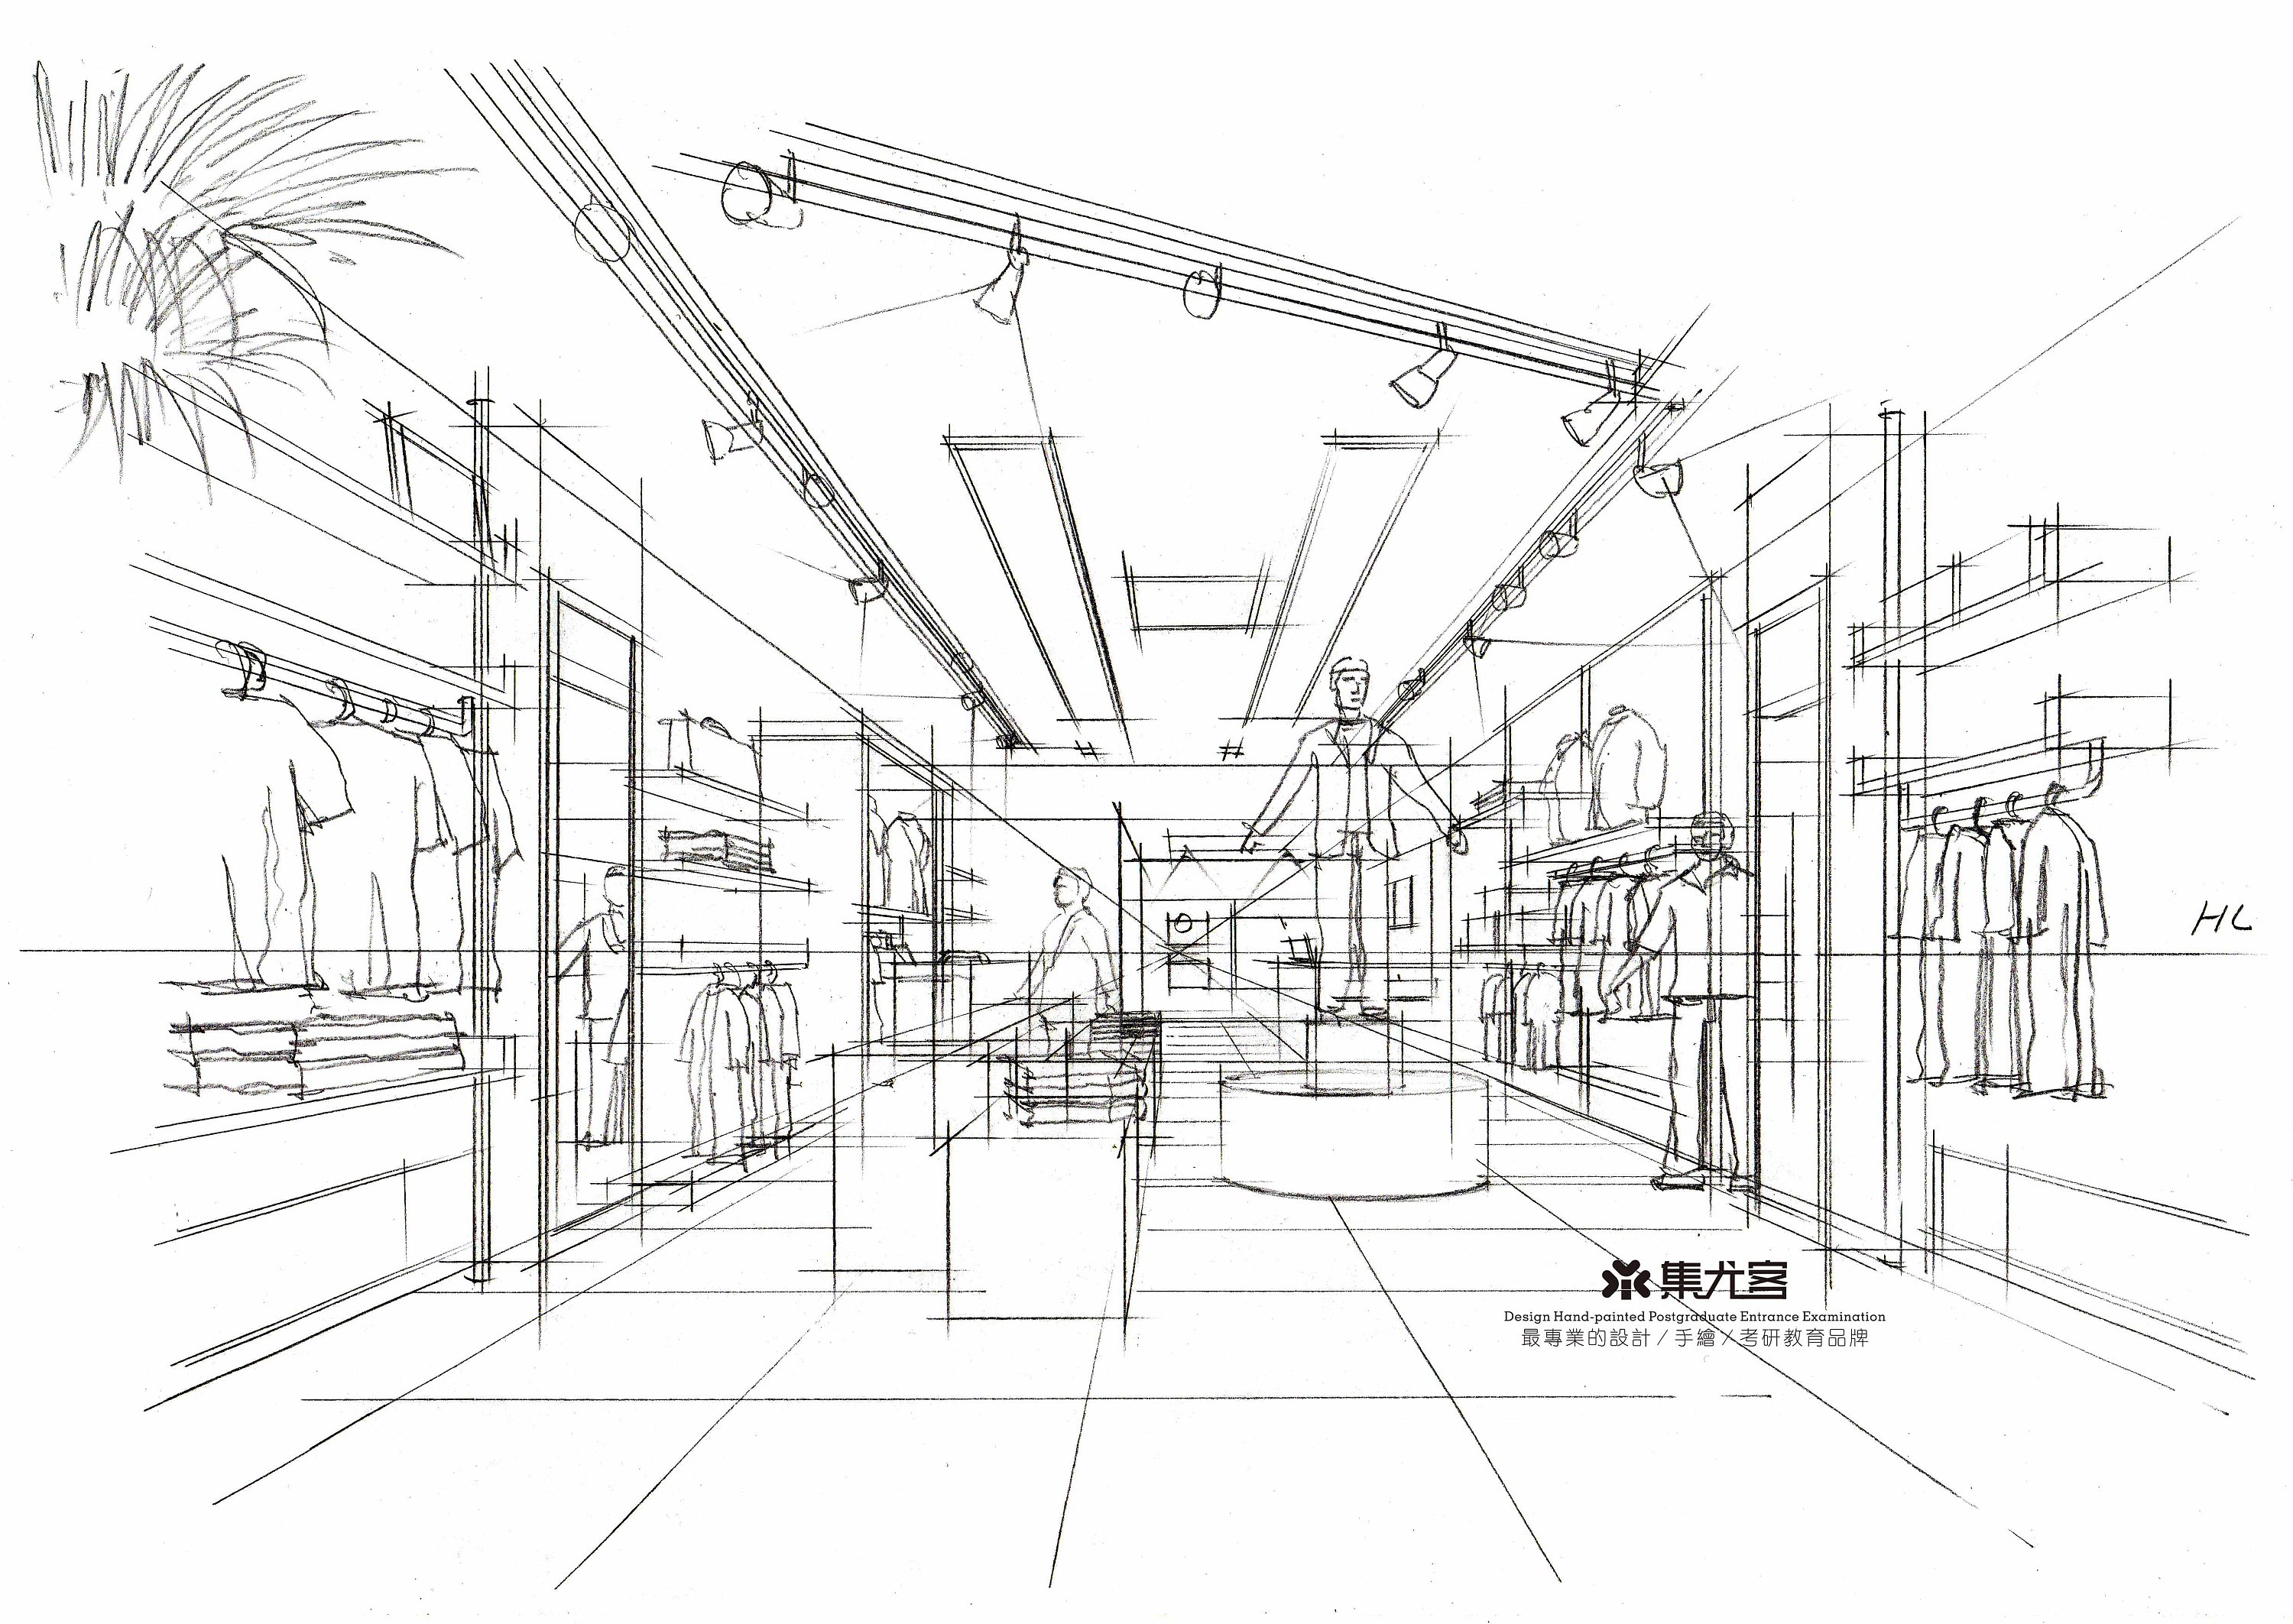 商场中庭空间手绘表现—线稿篇 - 室内设计教程_马克笔手绘 - 虎课网